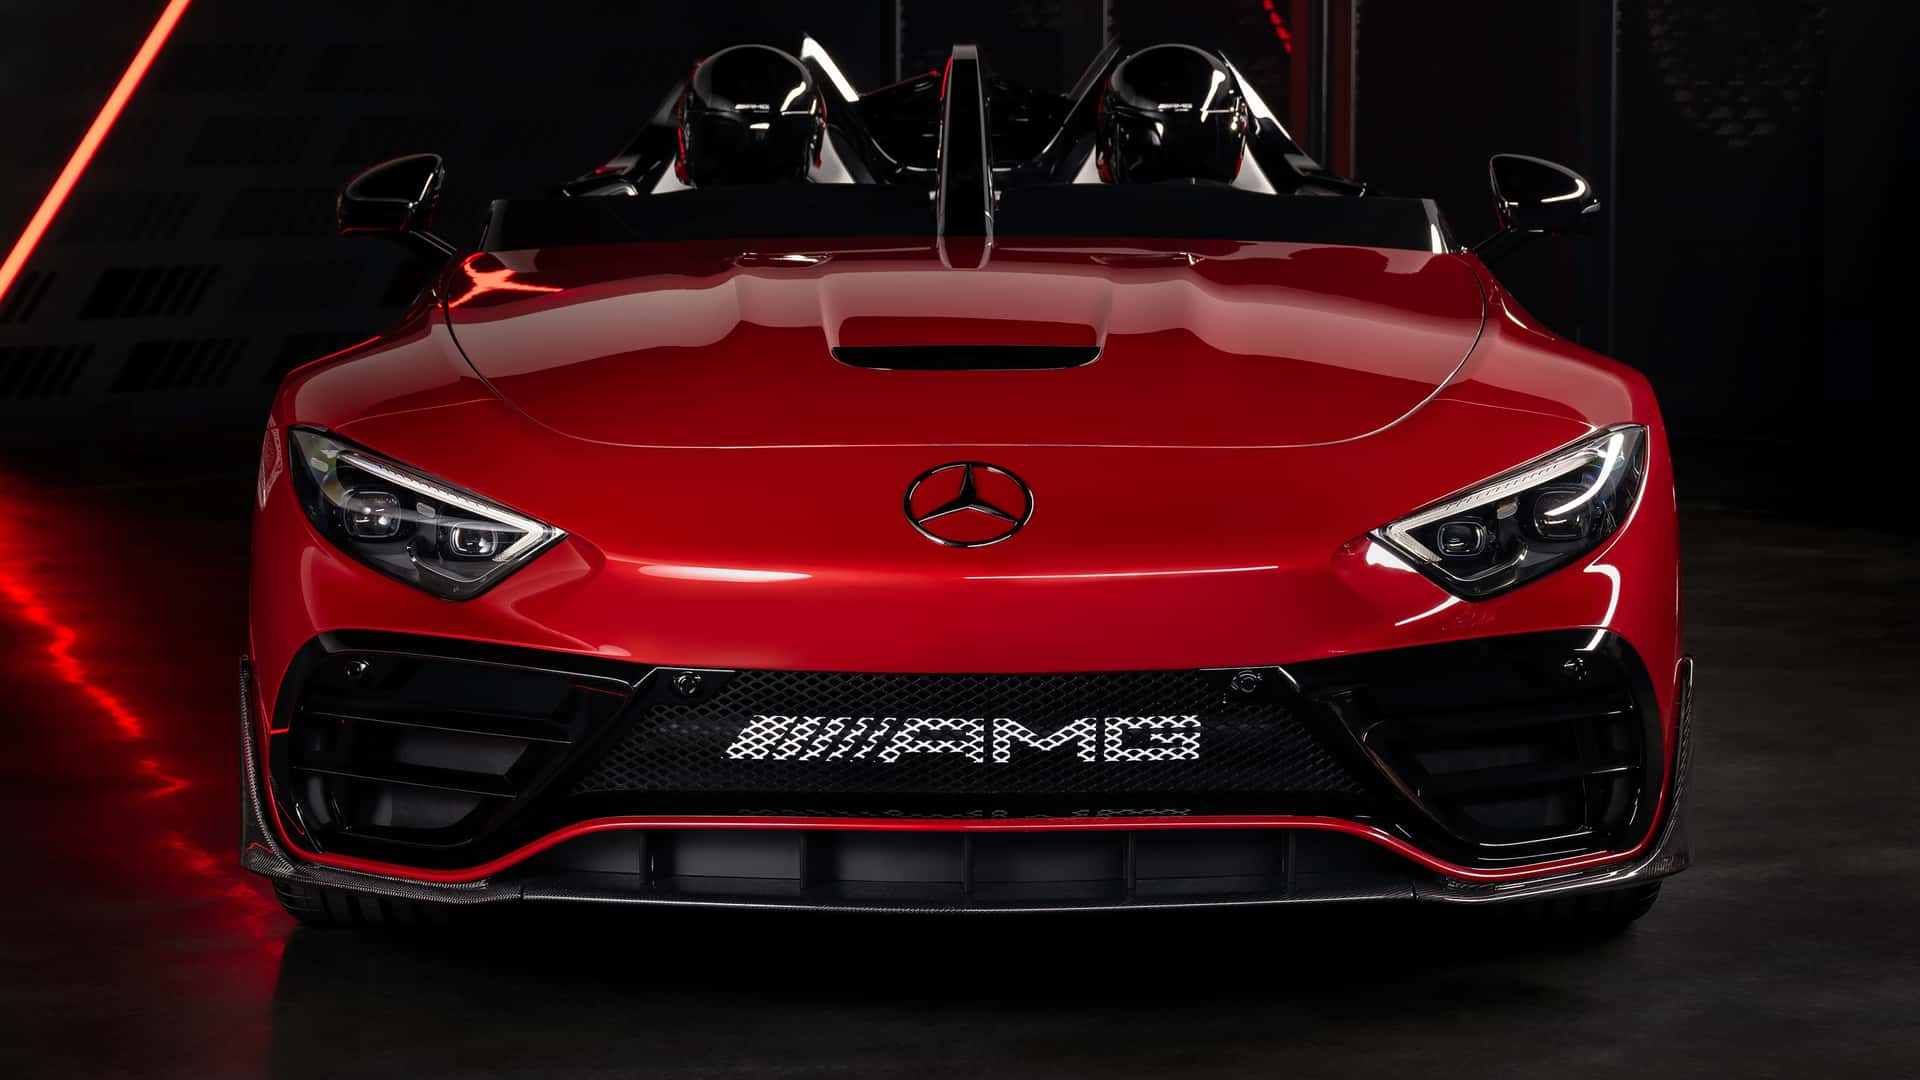 Ra mắt Mercedes-AMG Mythos PureSpeed - Siêu xe dùng công nghệ F1, khách phải được Mercedes-Benz duyệt mới được mua- Ảnh 6.